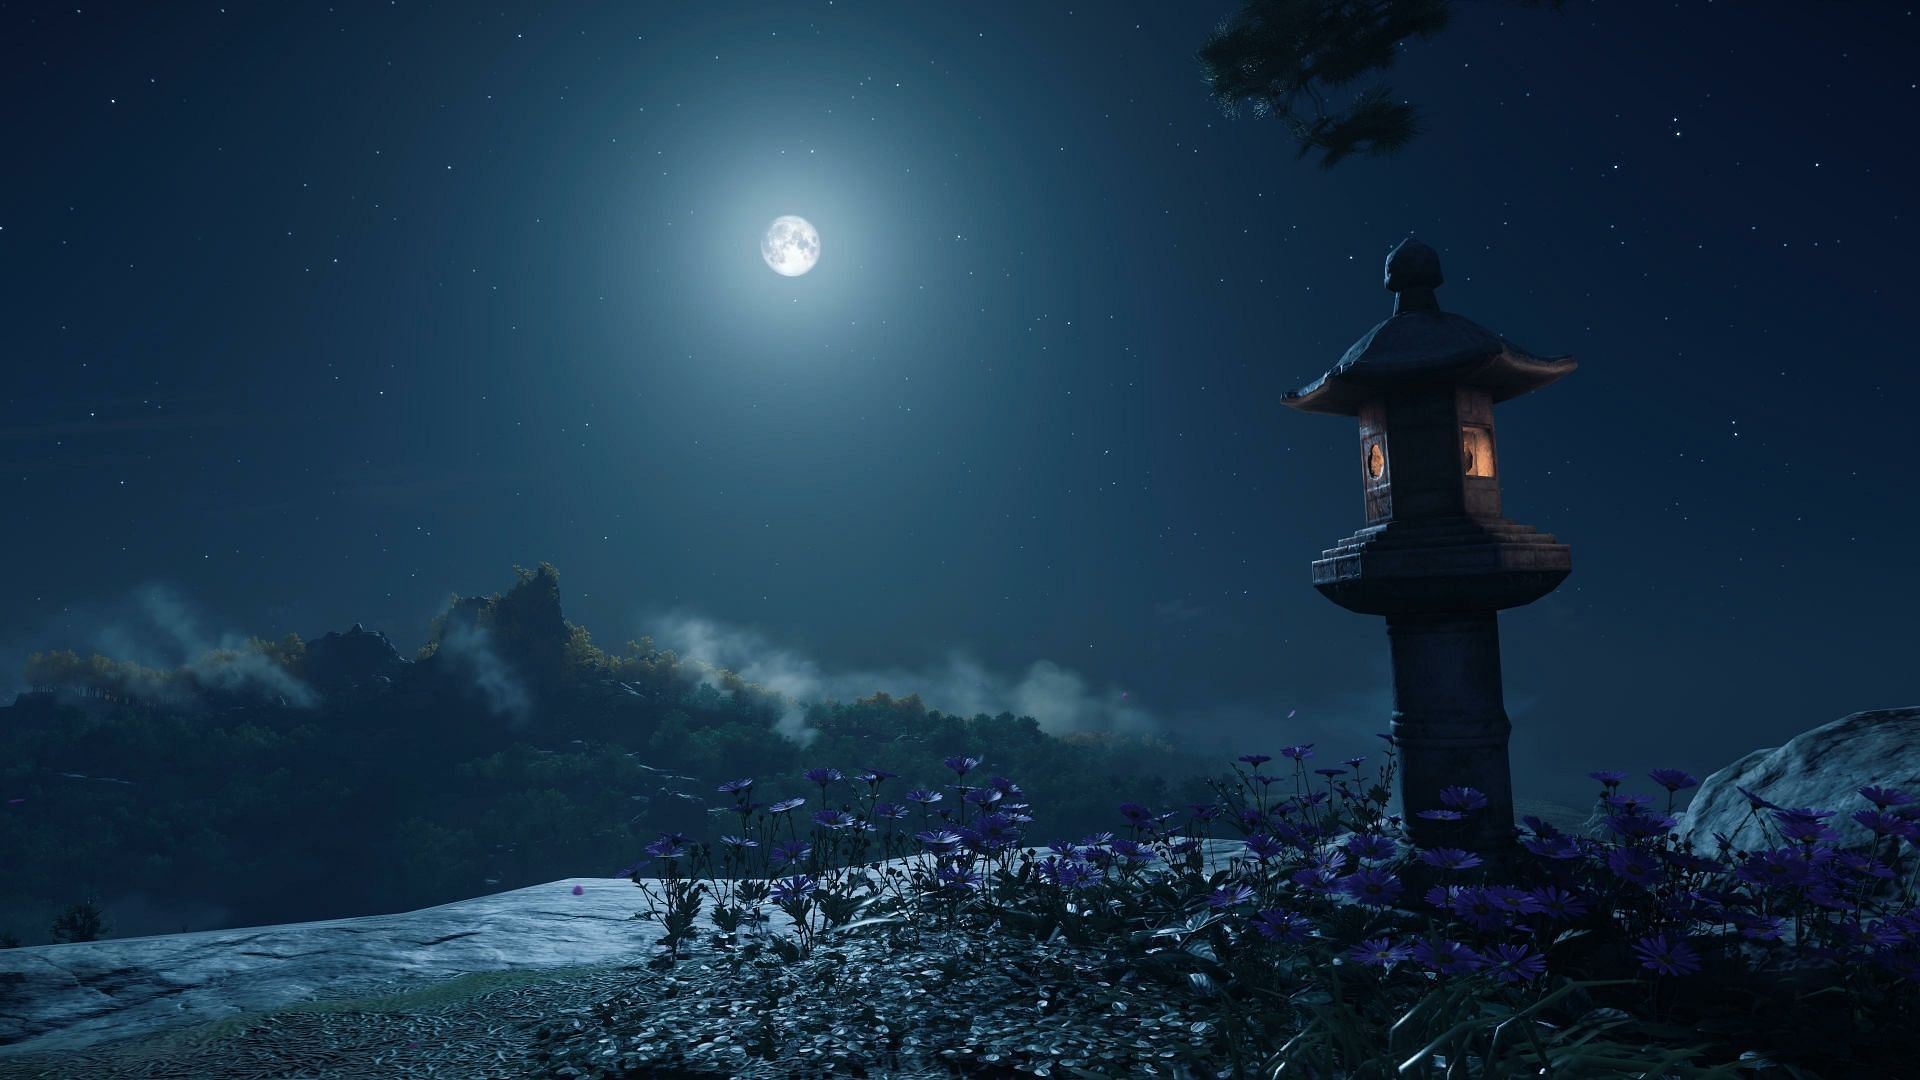 A moonlit landscape. (Image via Sucker Punch)